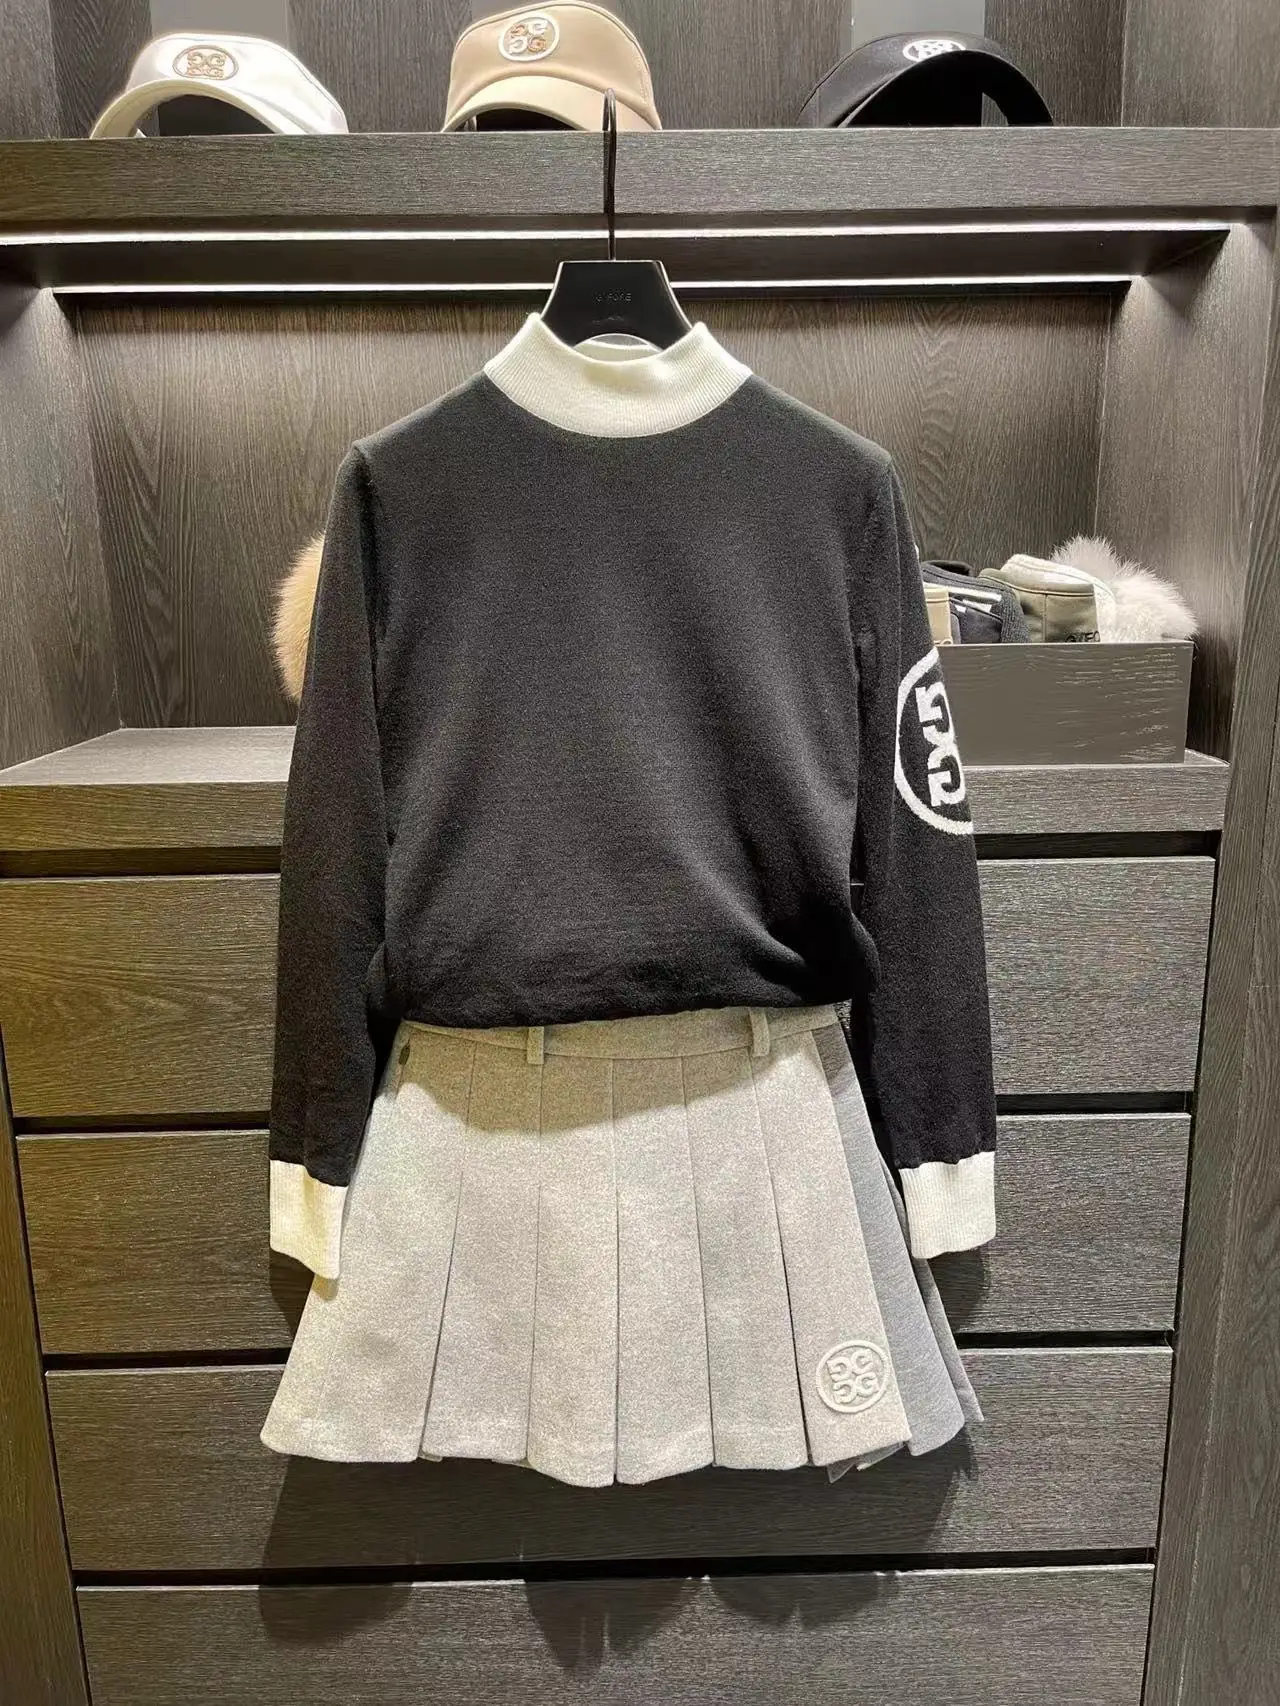 【Presale】Golf Kint Sweater Shirts Women's Windproof High-Neck Long Sleeve Sweater Outdoor Sports Keep Warm Golf Top